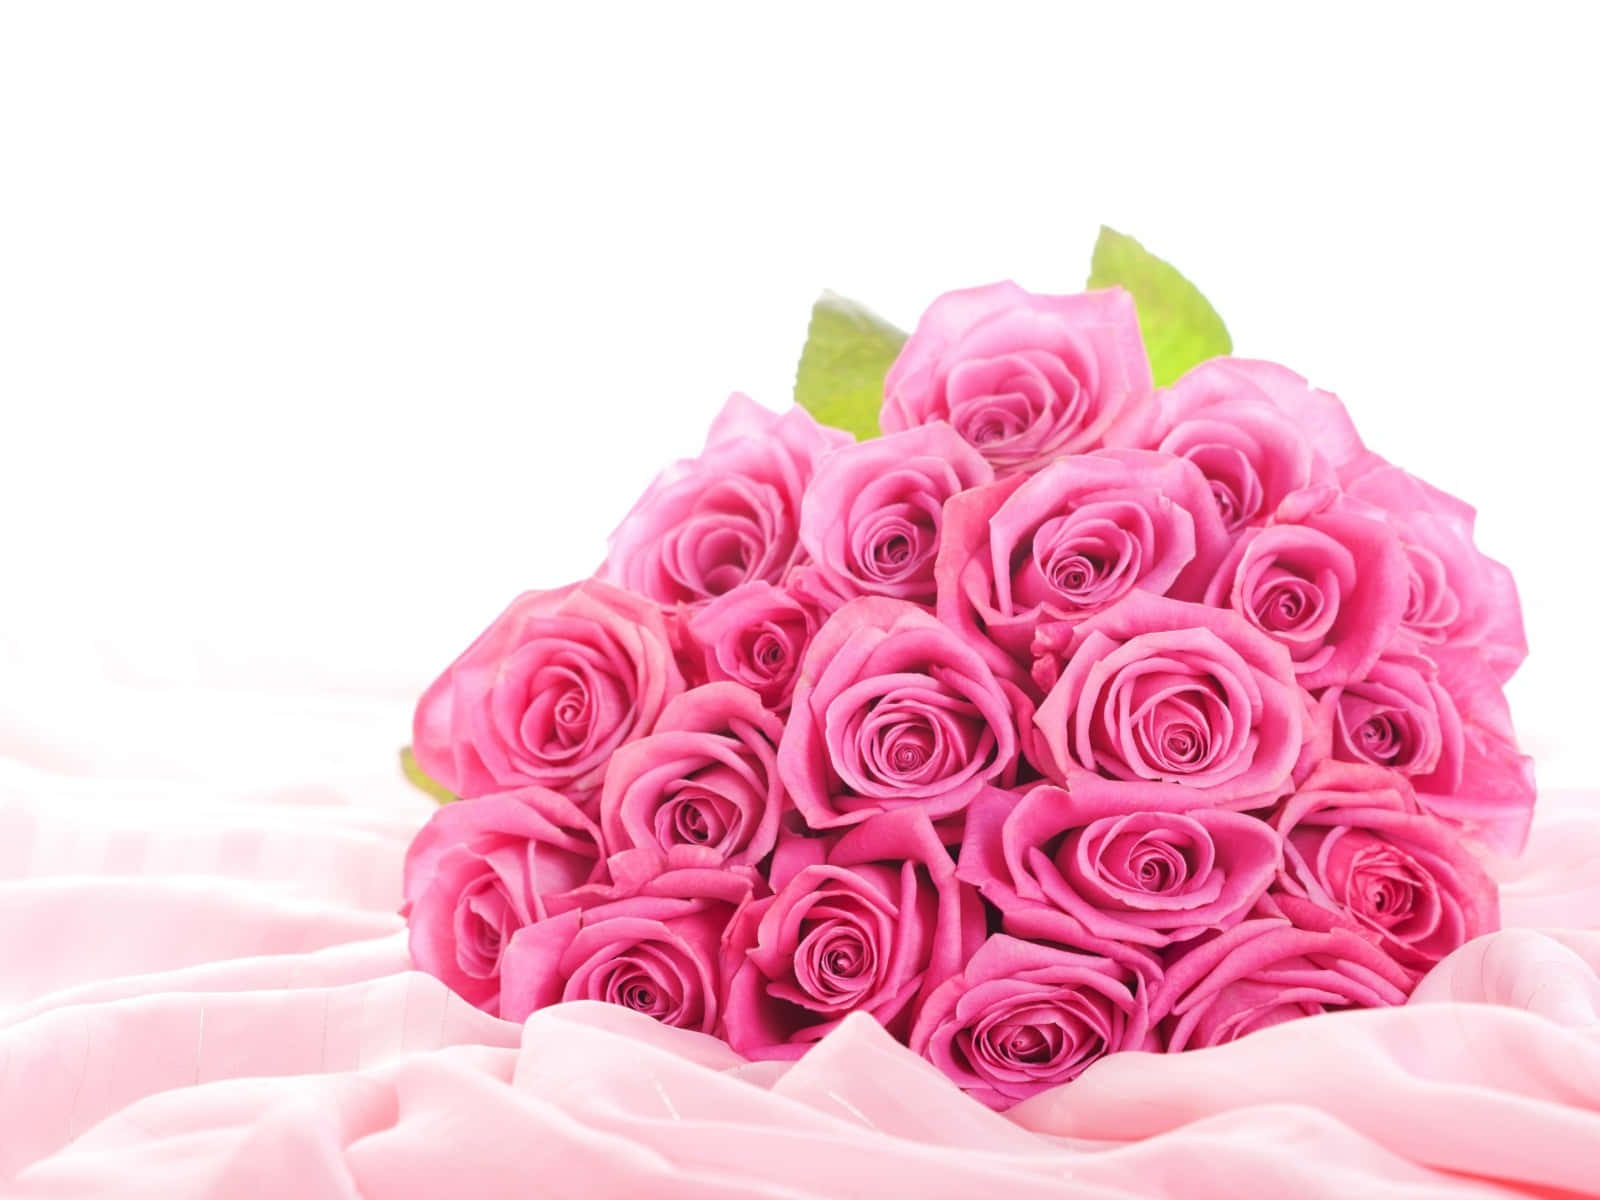 Unarosa Rosa Brillante, Símbolo De Amor, Alegría Y Belleza.